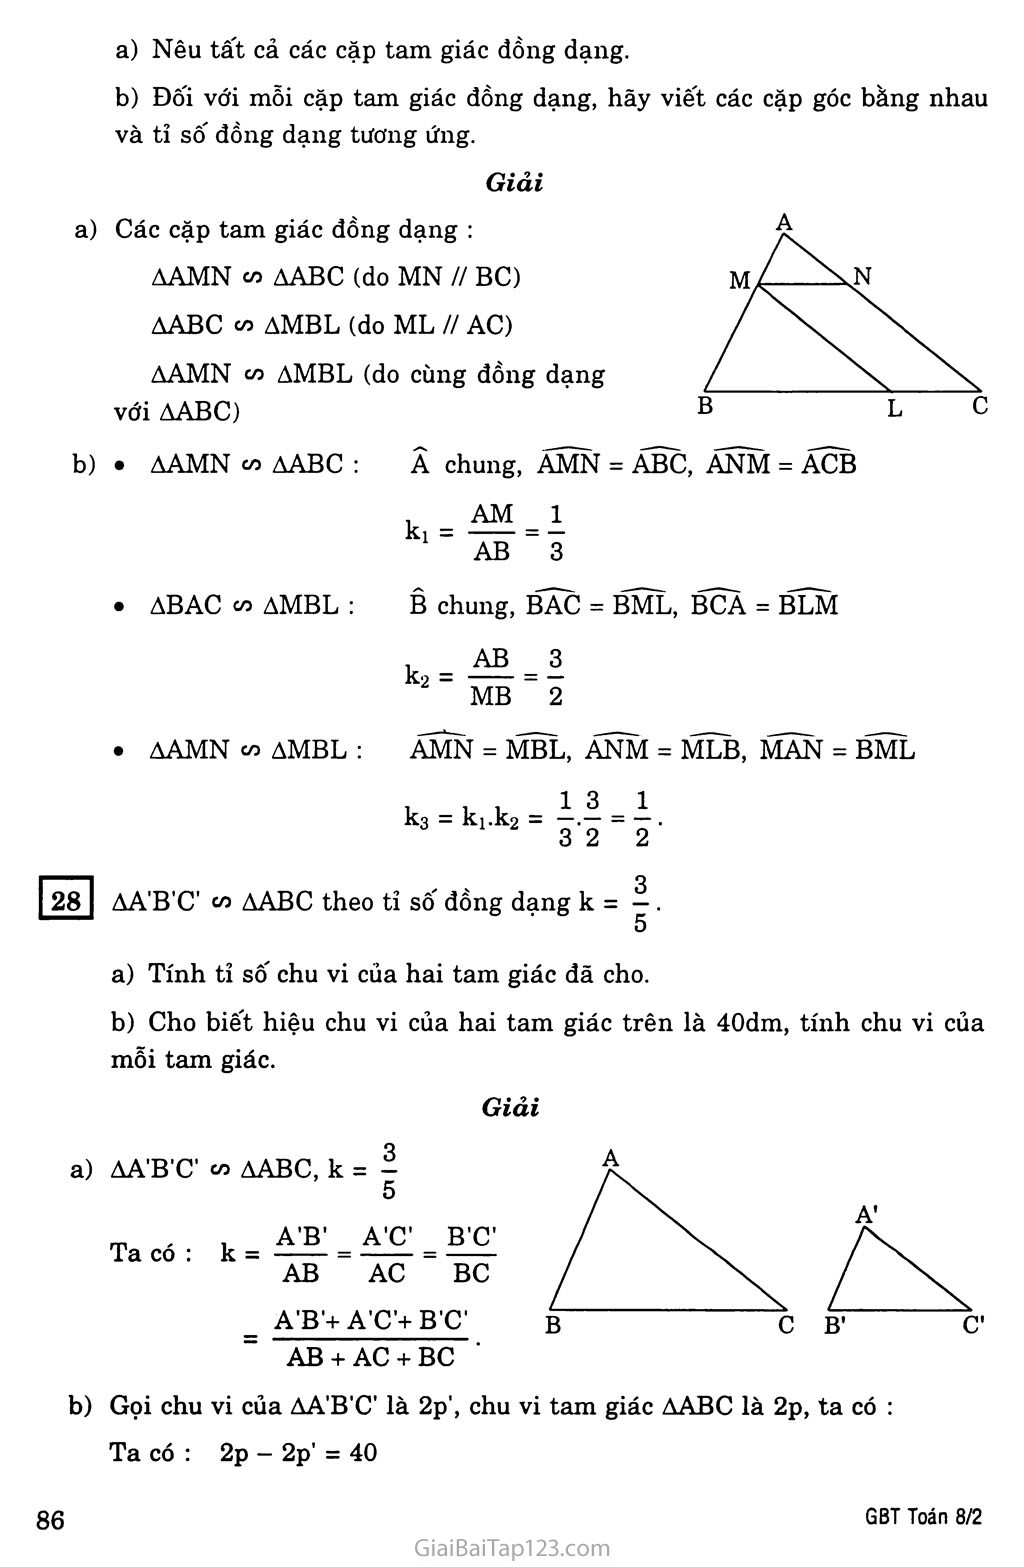 §4. Khái niệm hai tam giác đồng dạng trang 4